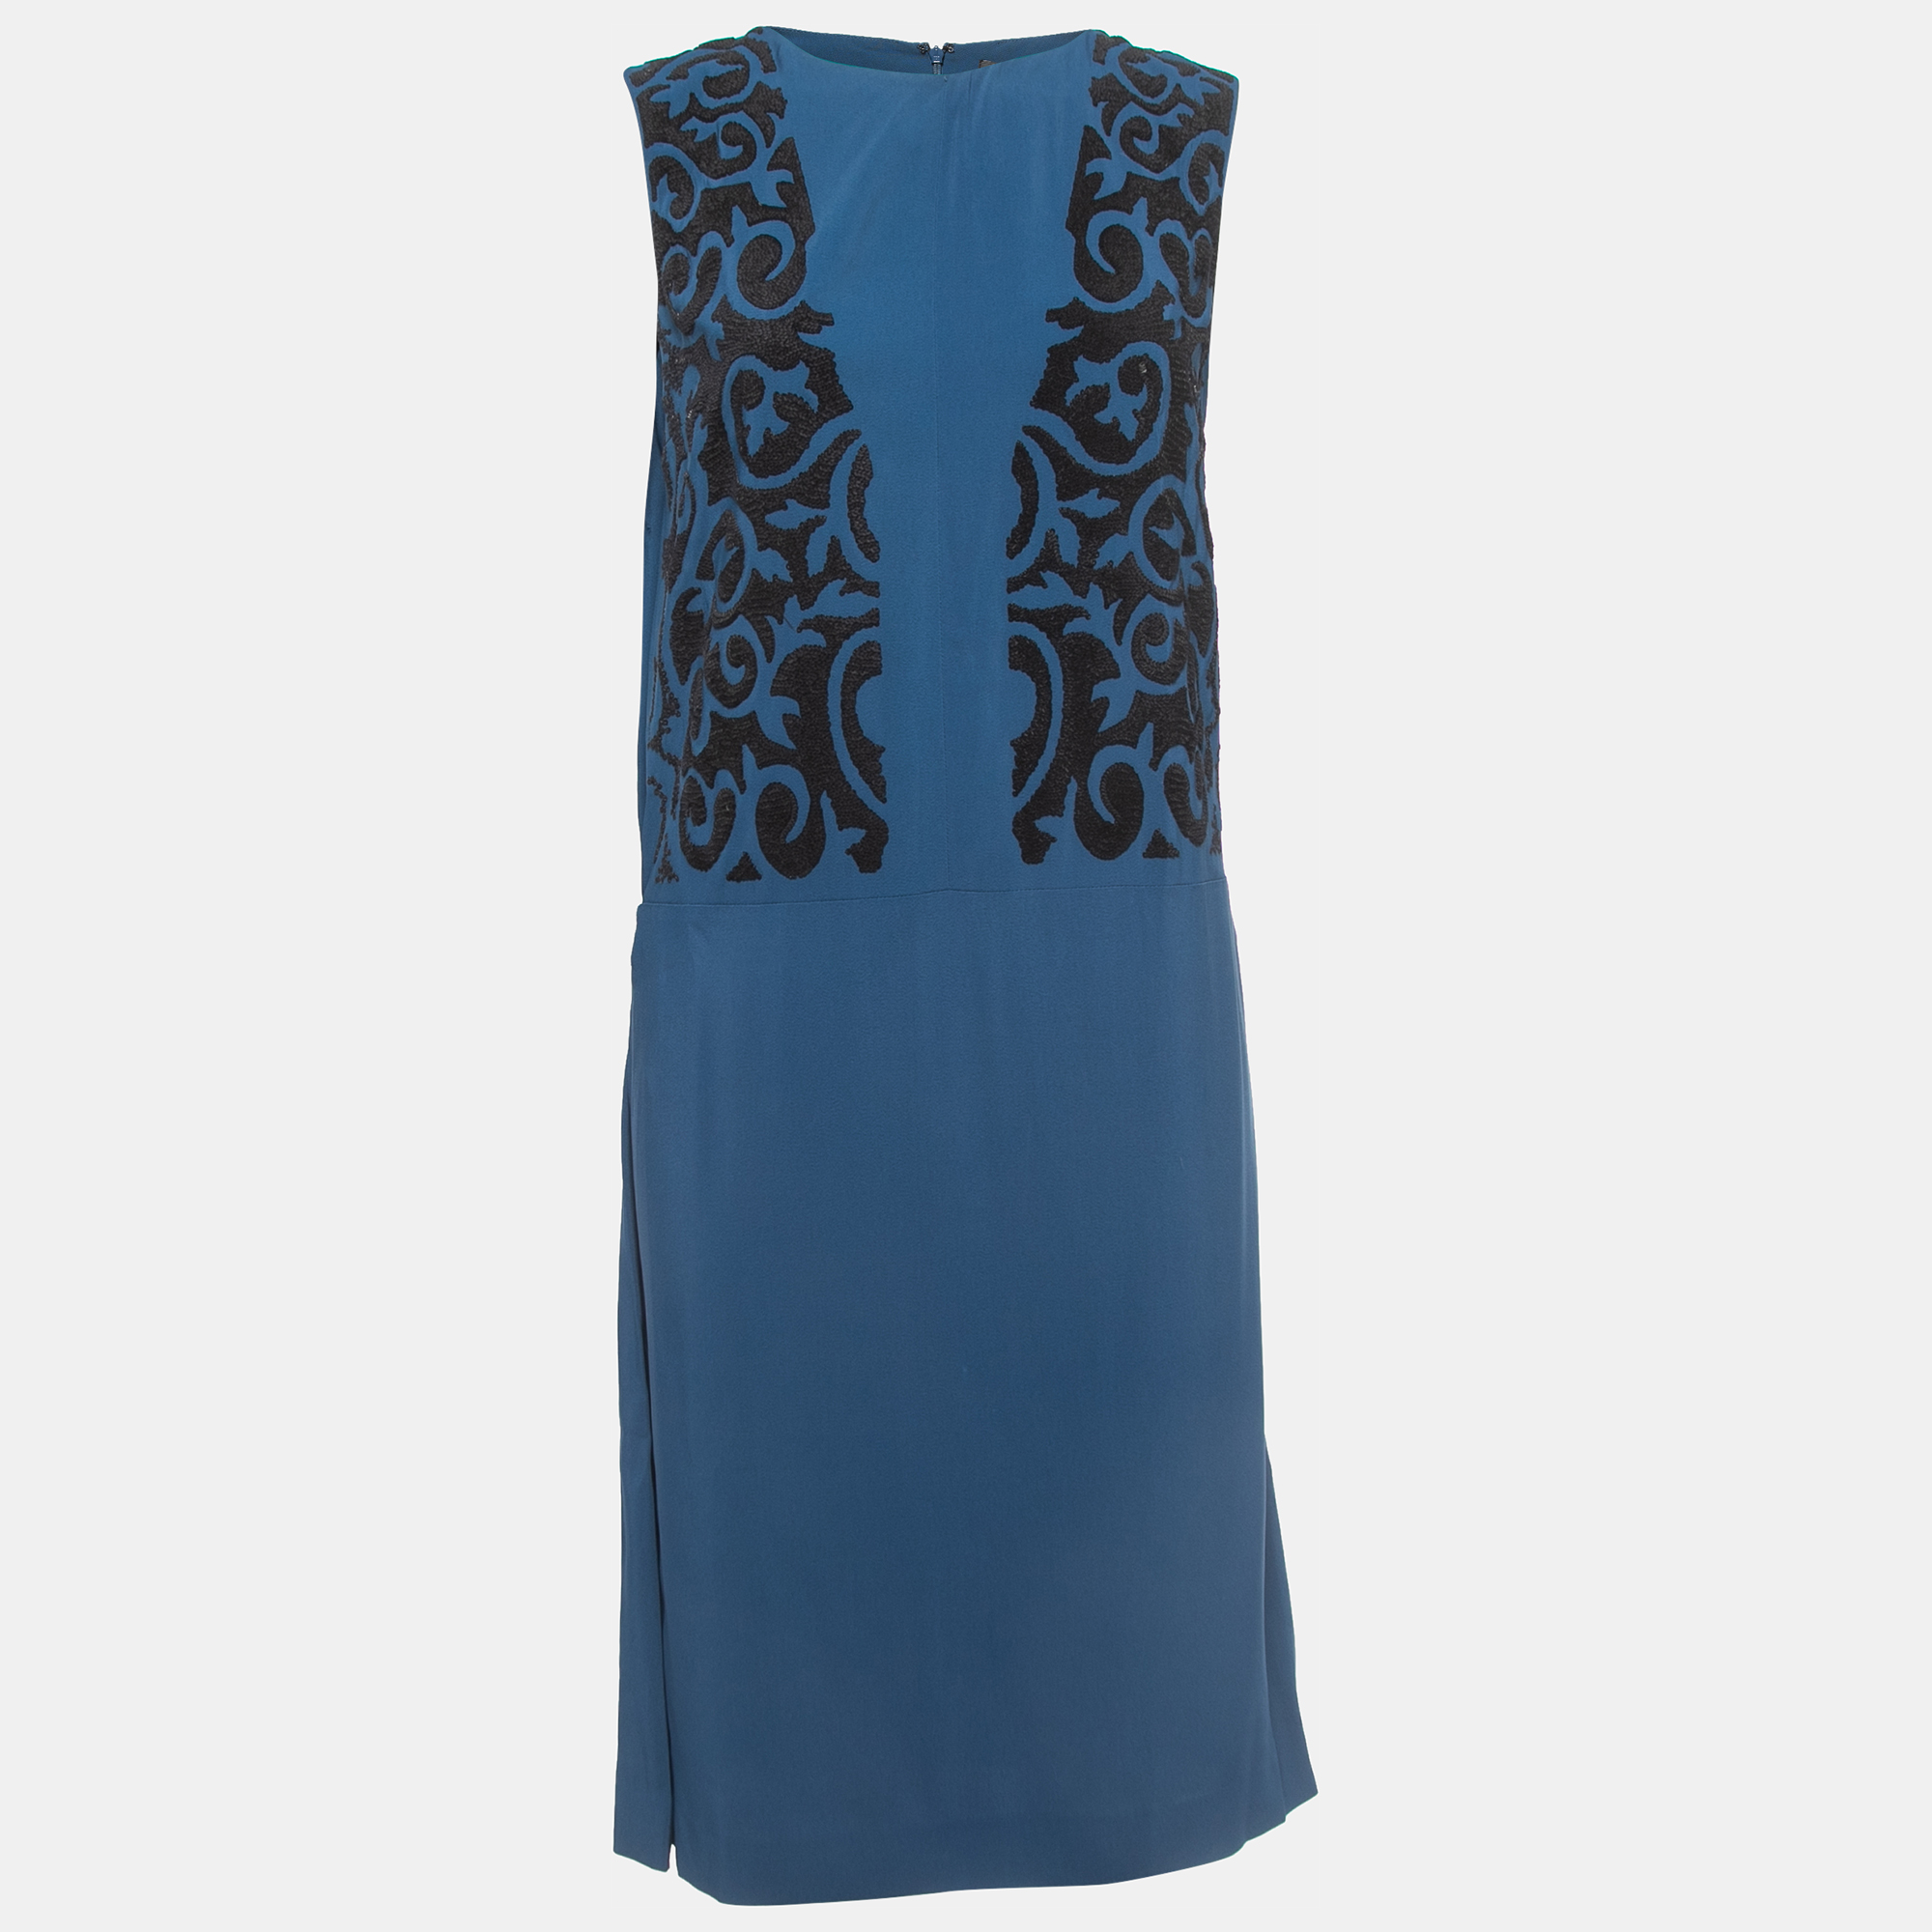 Etro dark blue crepe sequin embellished sleeveless dress s